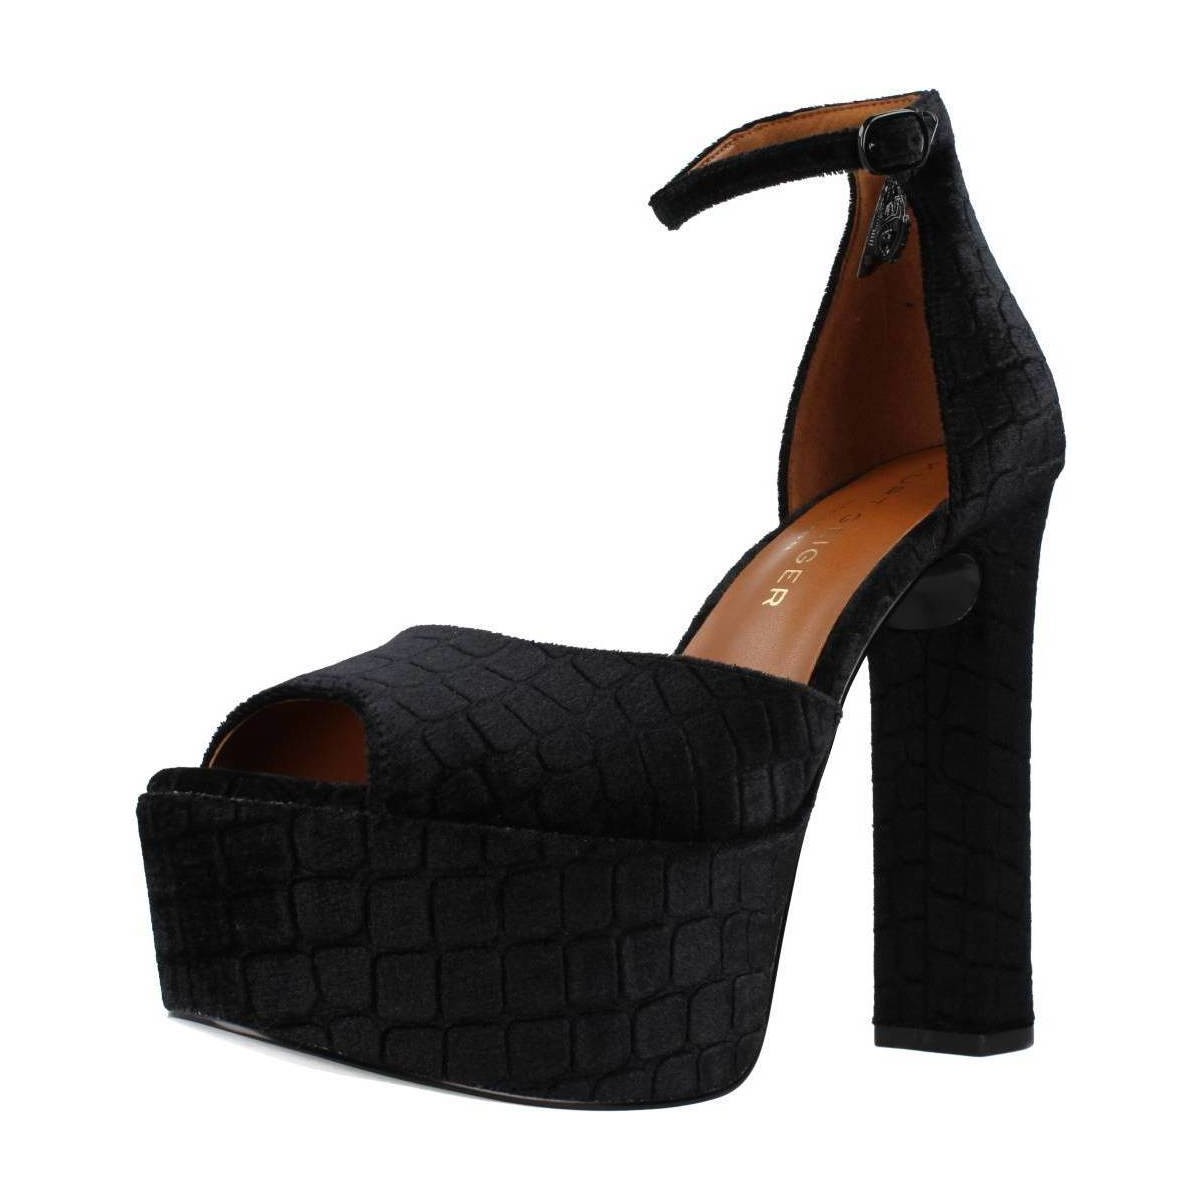 Chaussures Femme Sandales et Nu-pieds Kurt Geiger London SHOREDITCH HIGH PLATFOR Noir